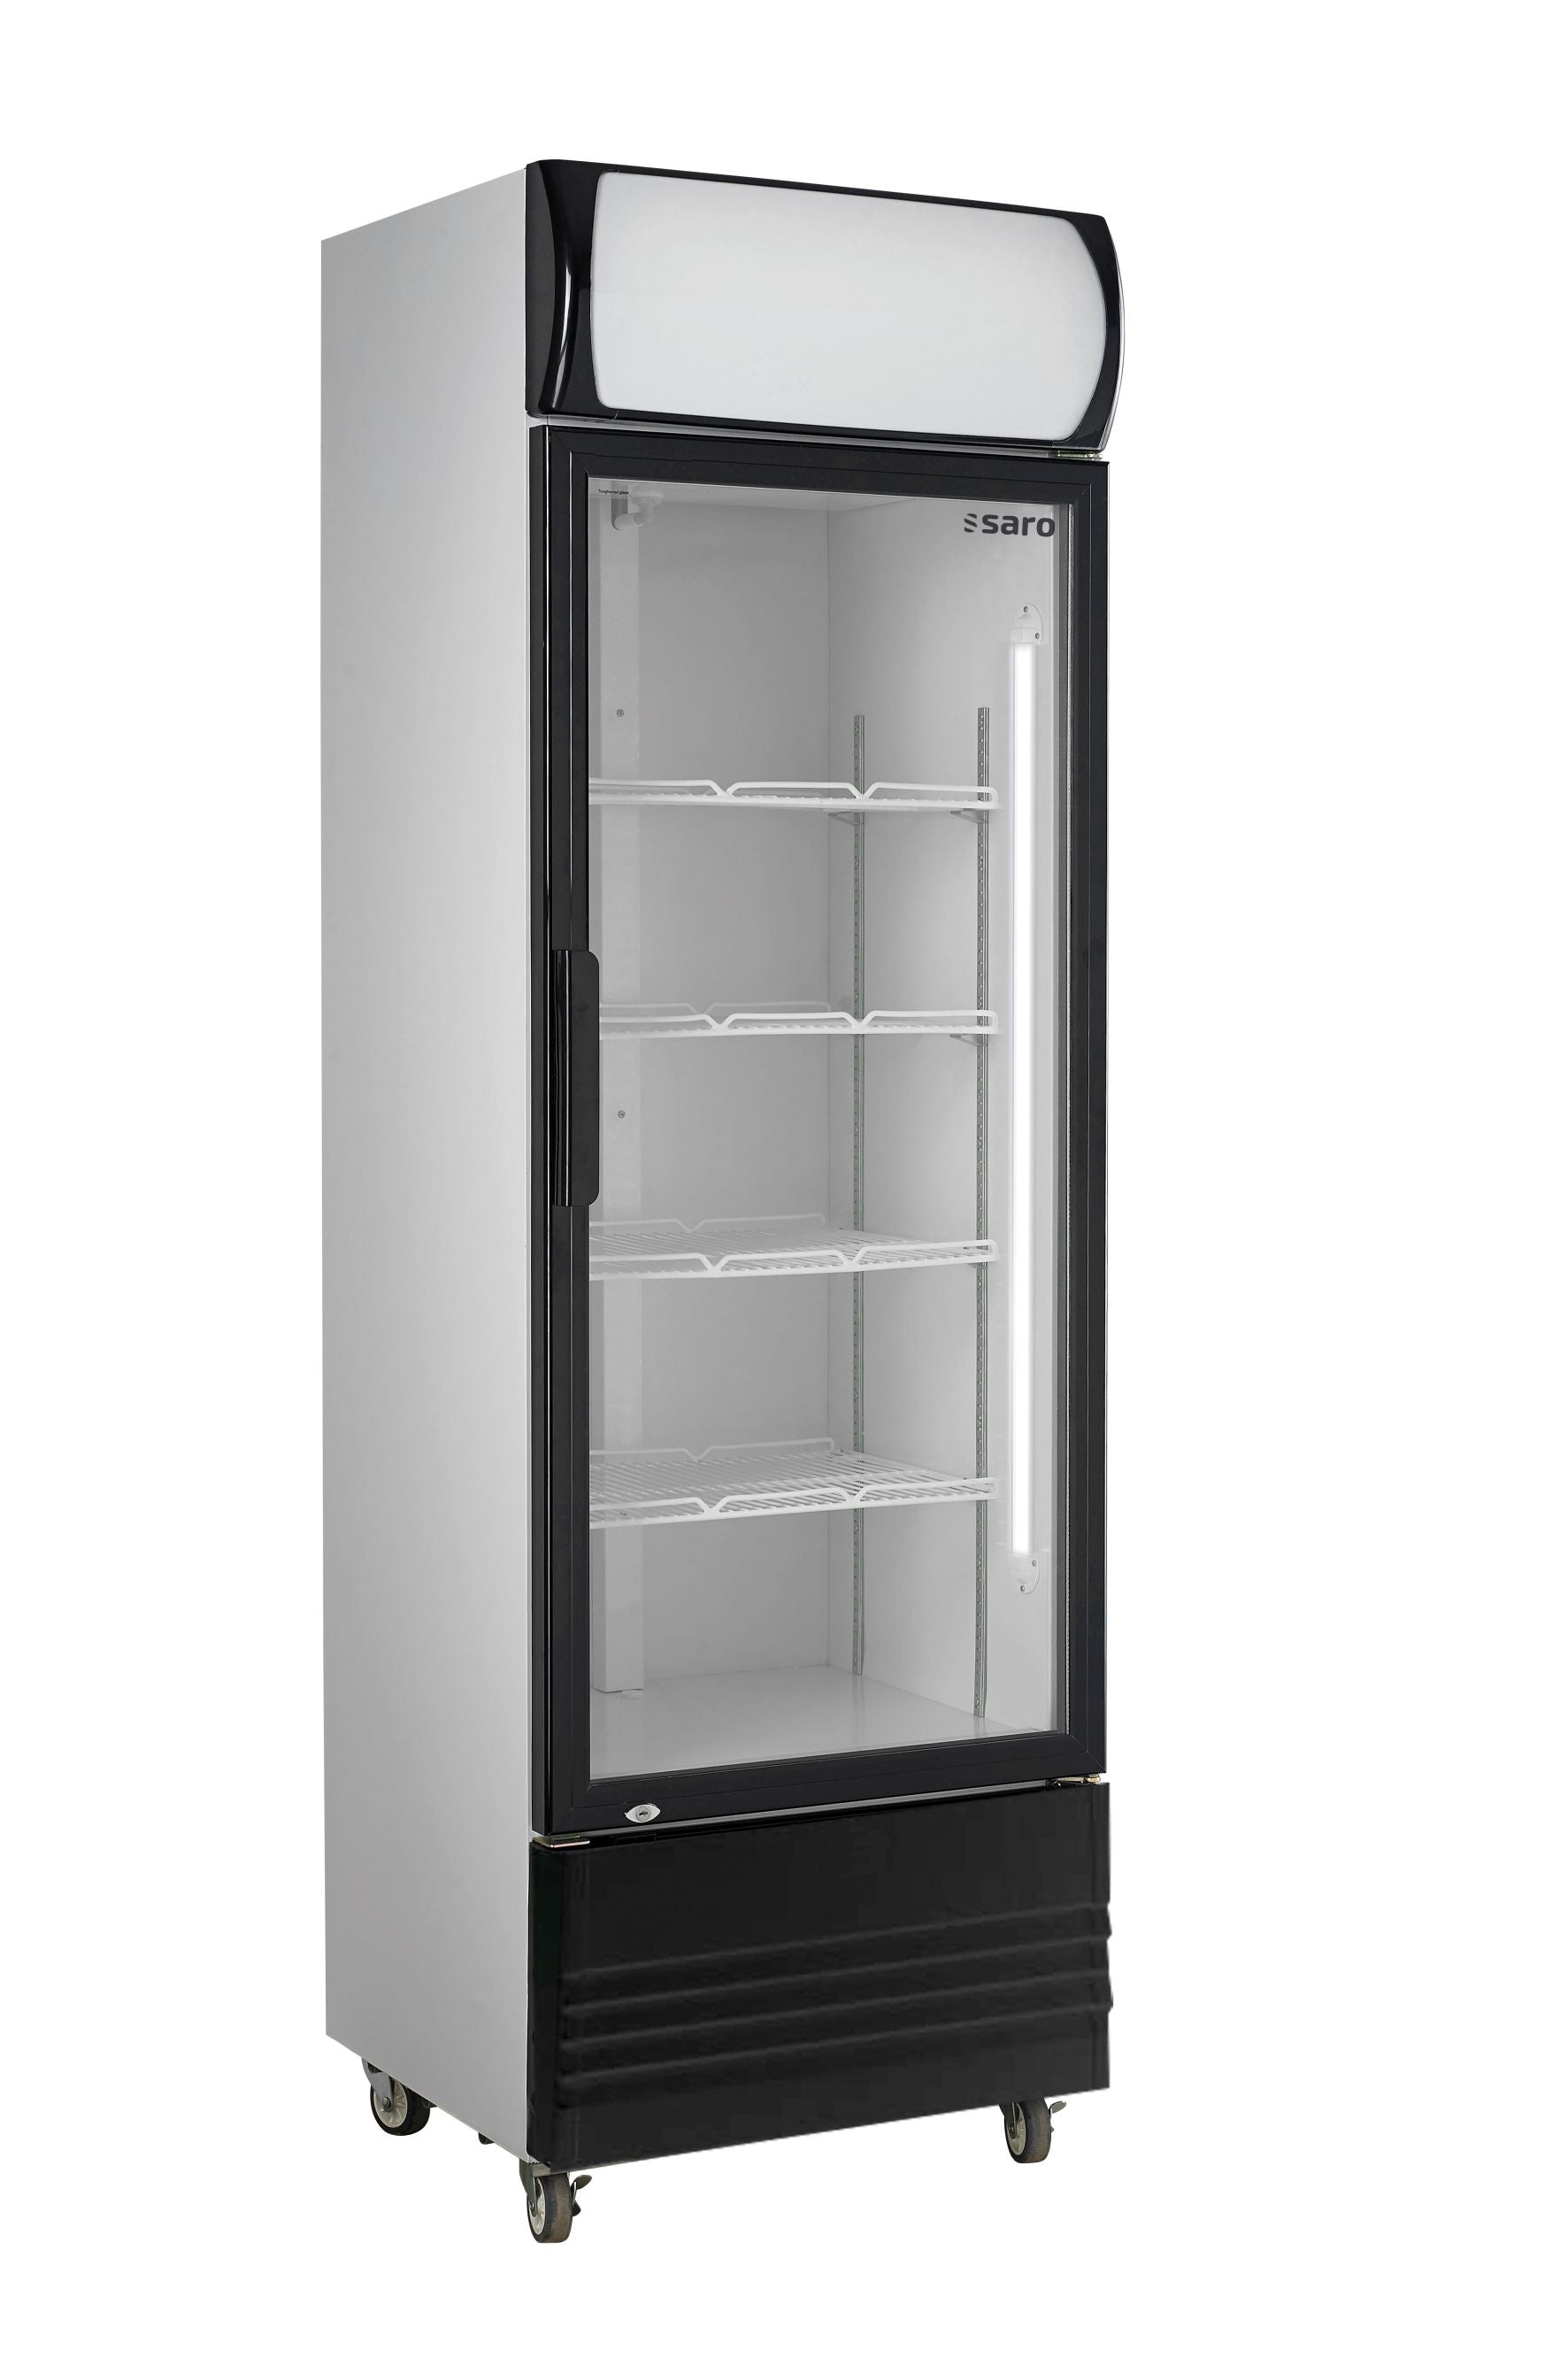 SARO Køleskab med glaslåge og billboard, model GTK